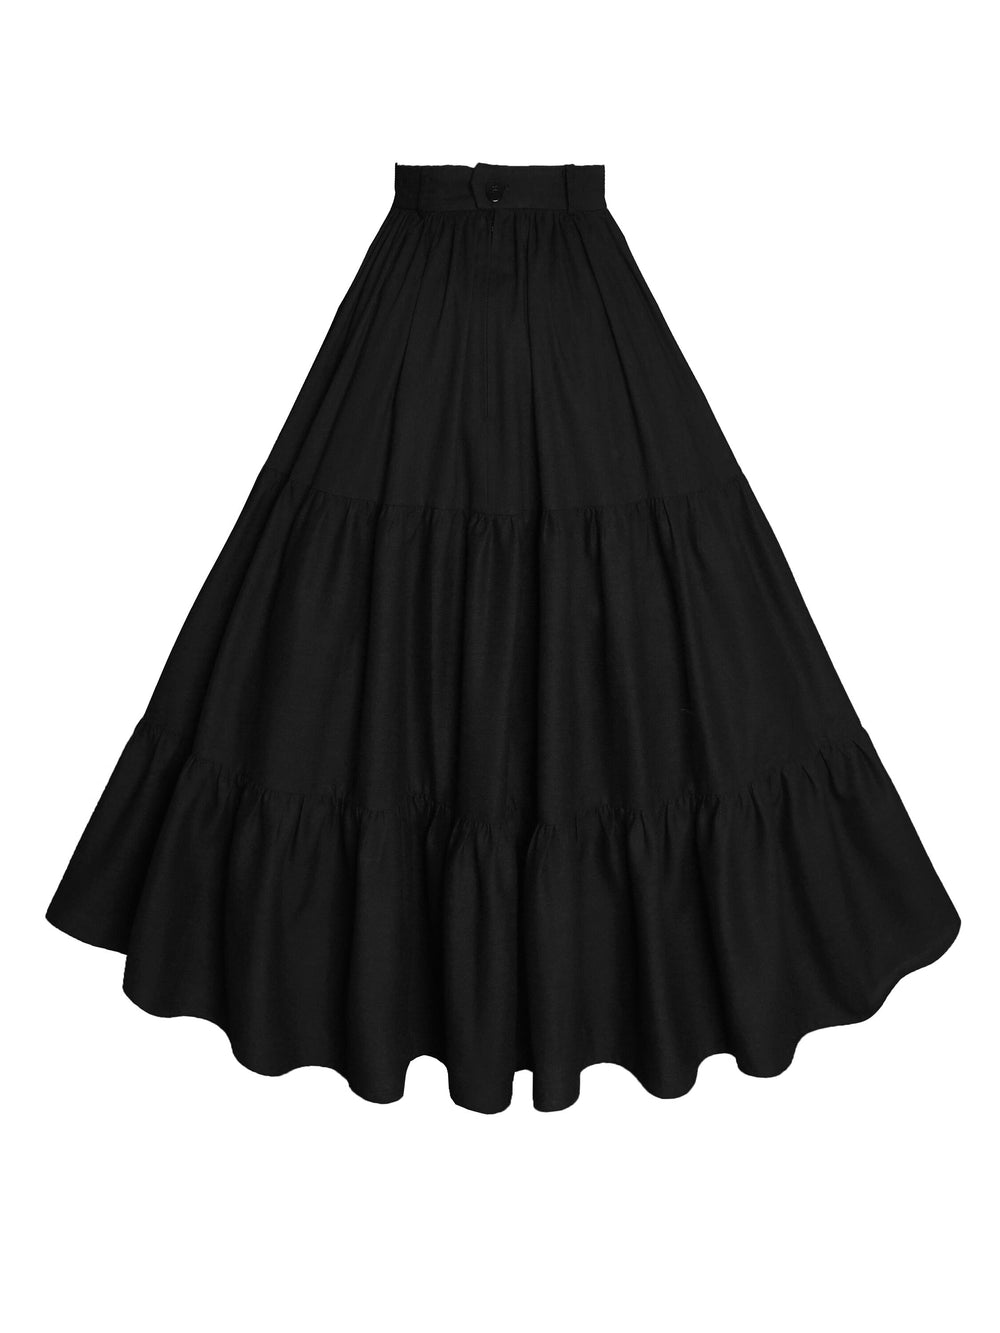 MTO - Pippa Skirt in Midnight Black Linen